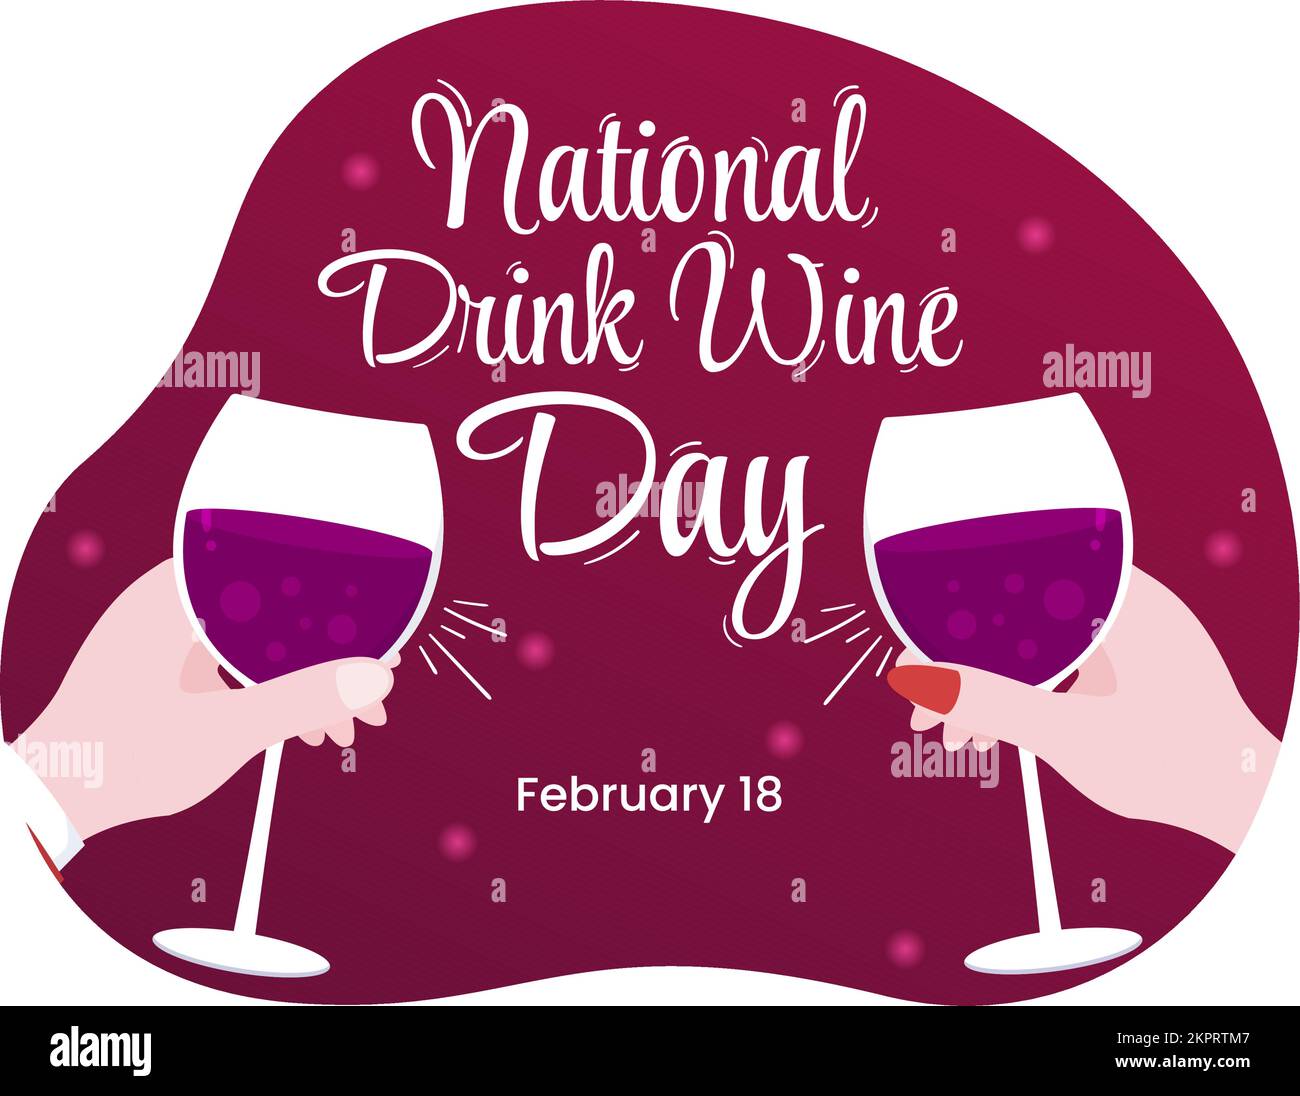 National Drink Wine Day am 18. Februar mit einem Glas Trauben und einer Flasche in einem flachen Cartoon Handgemalte Hintergrundvorlagen Illustration Stock Vektor